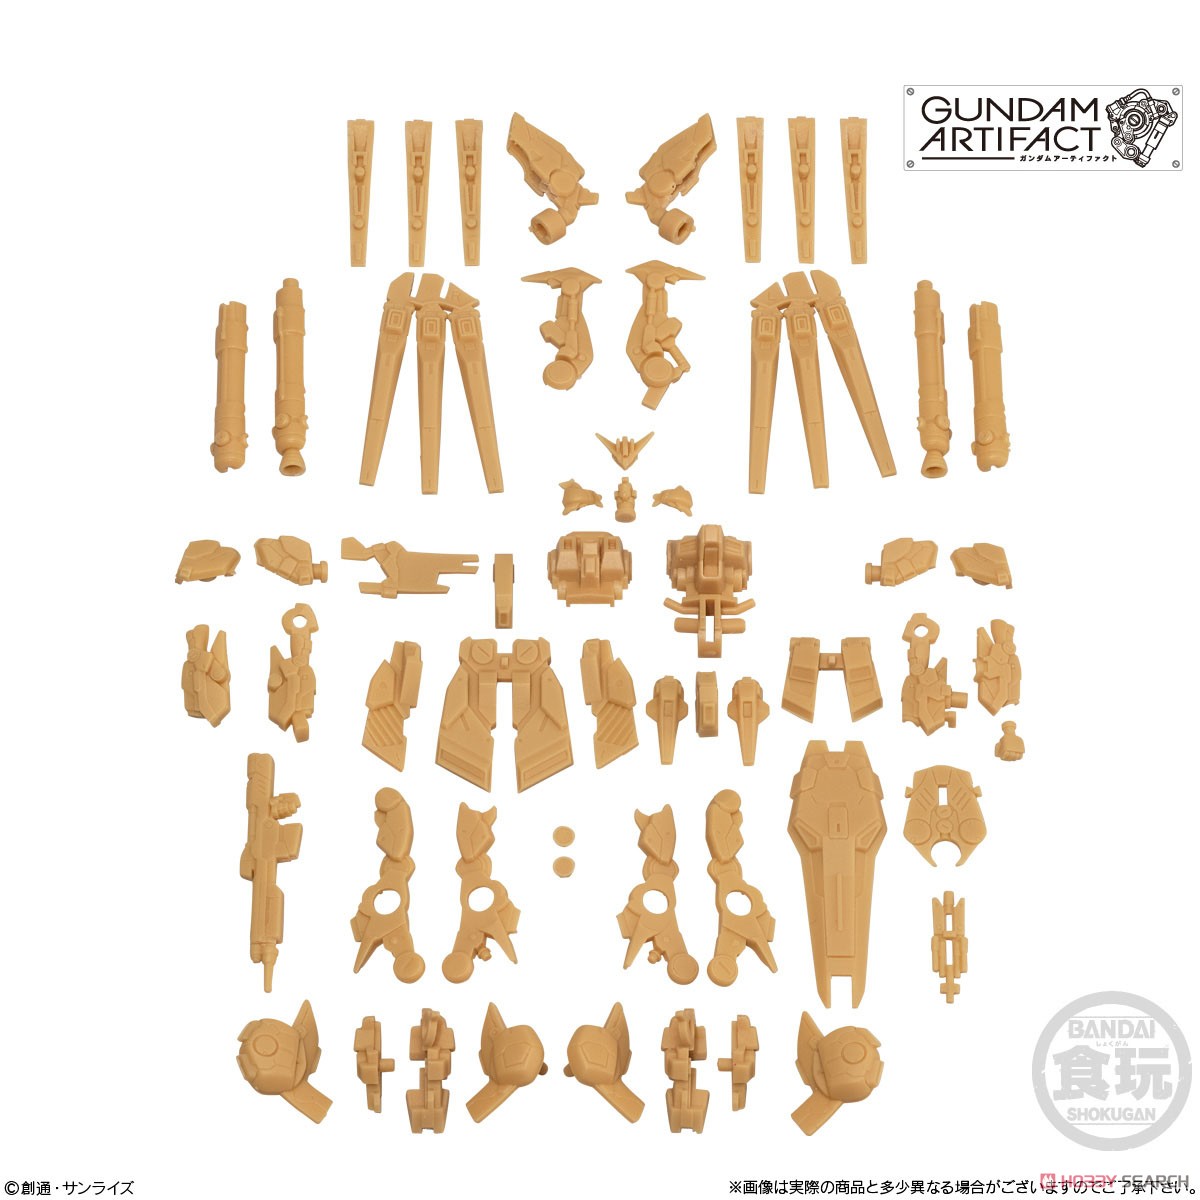 Gundam Artifact (Set of 10) (Shokugan) Item picture8